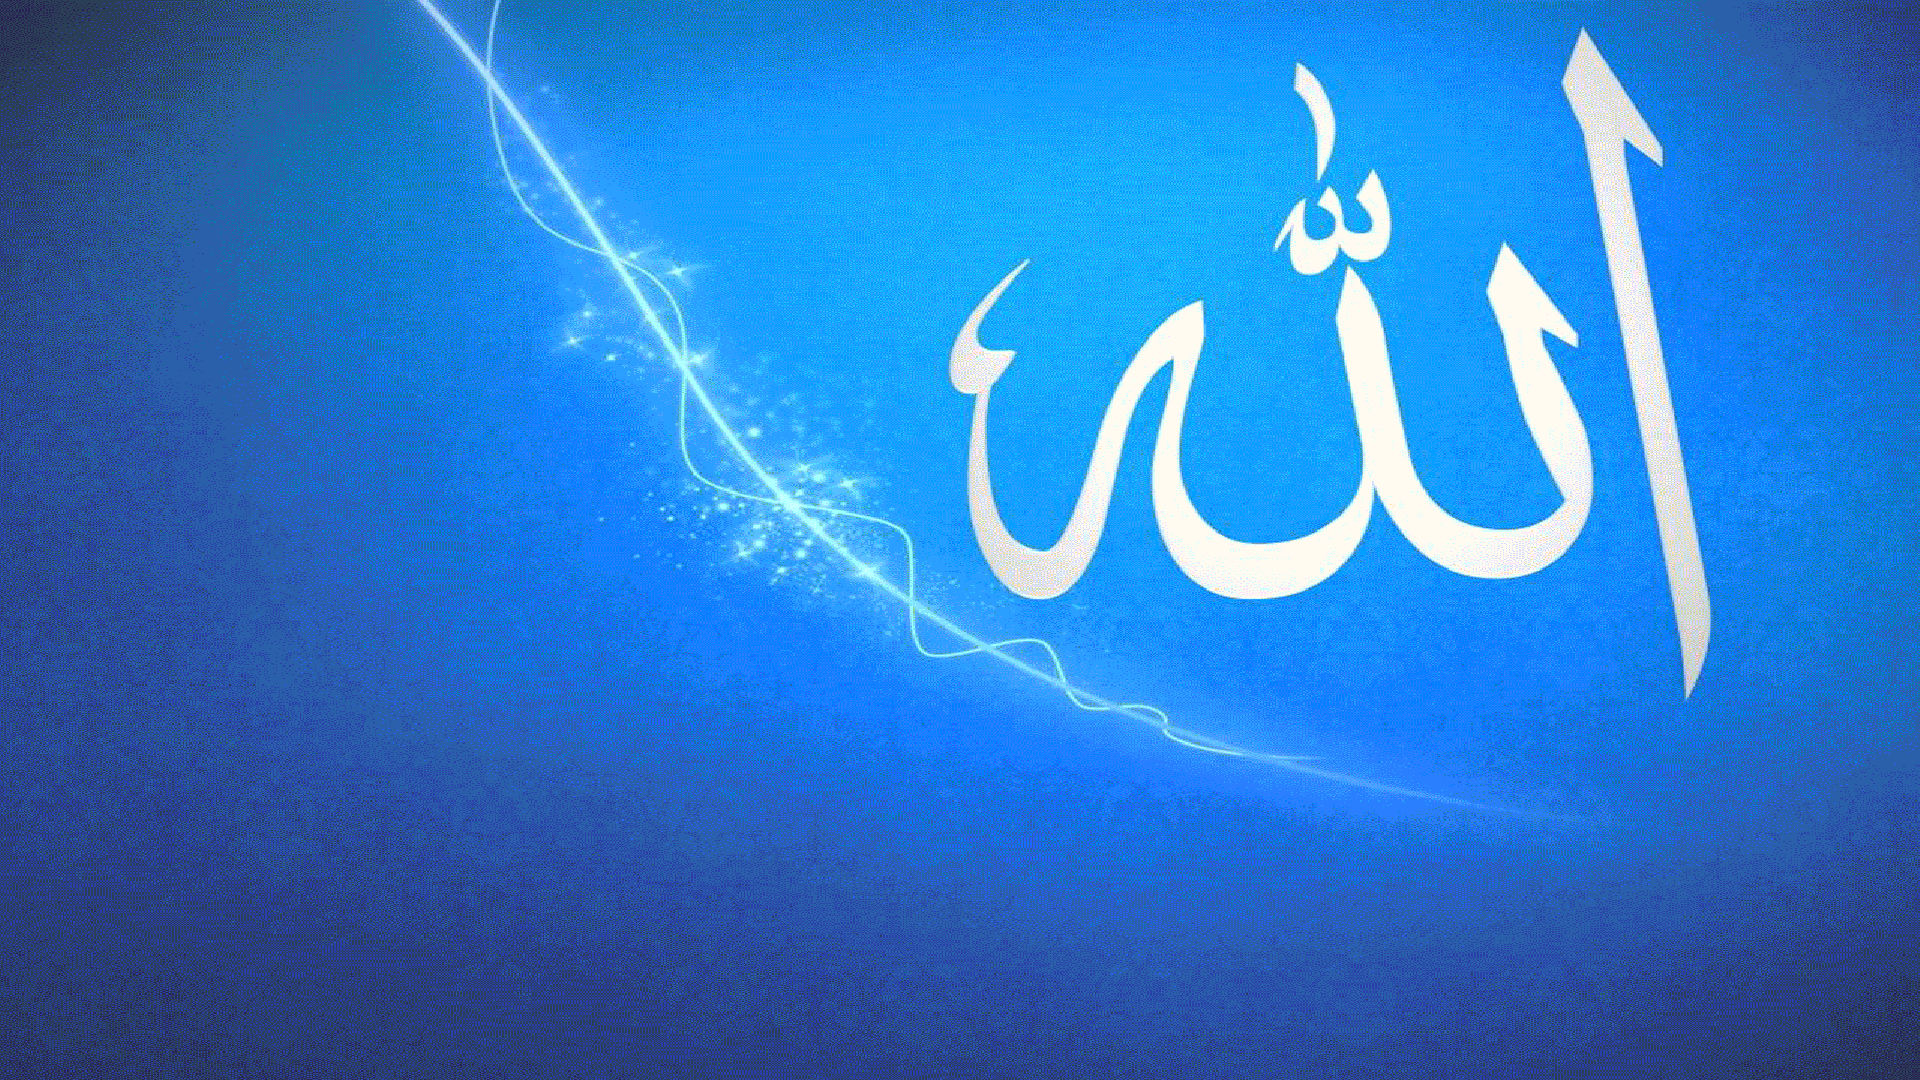 محبوب ترین بک گراند آبی رنگ لپتاپ با نام مبارک الله